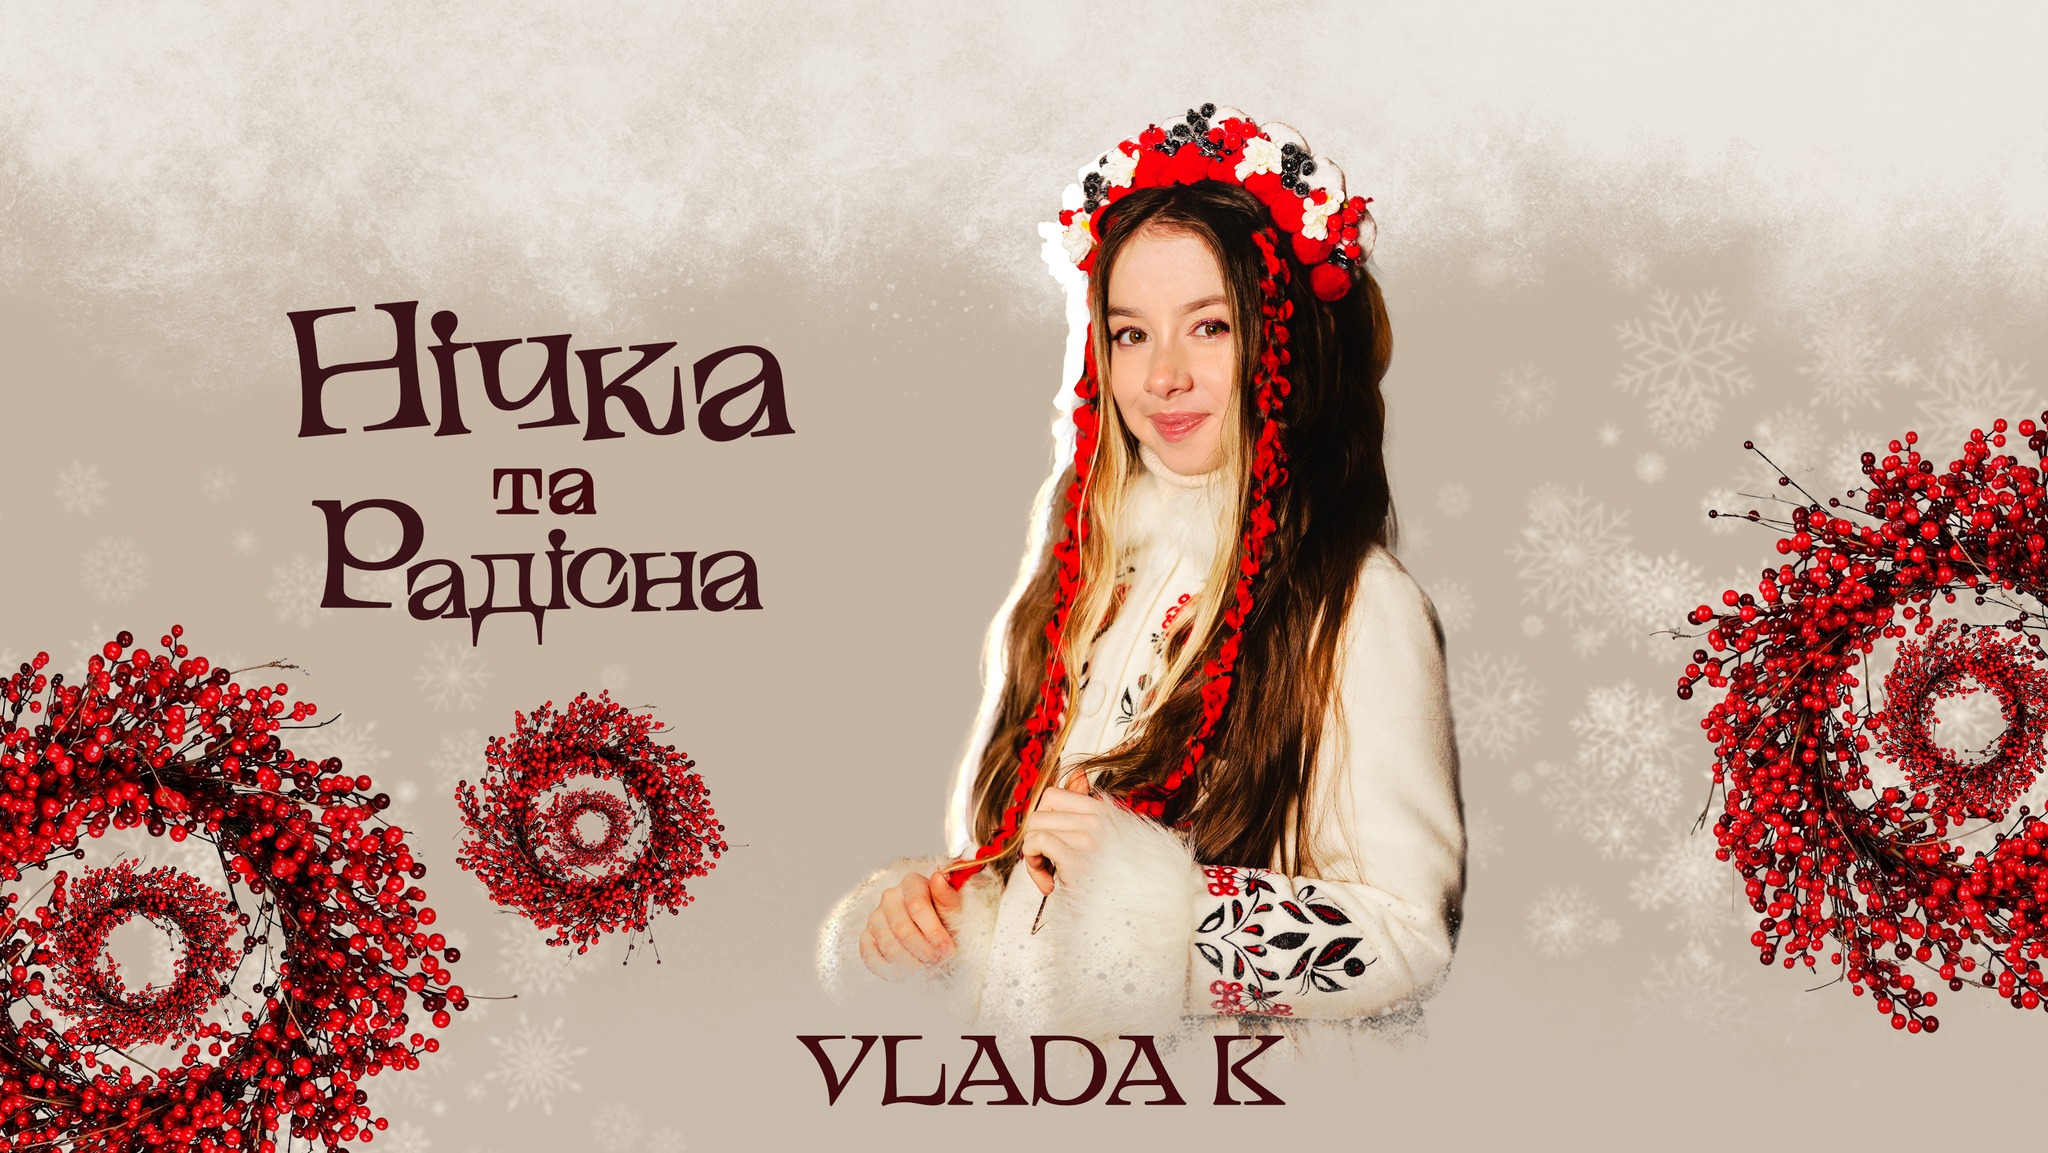 Співачка VLADA K презентує особливу автентичну колядку “Нічка та радісна” до новорічно-різдвяних свят (ВІДЕО)